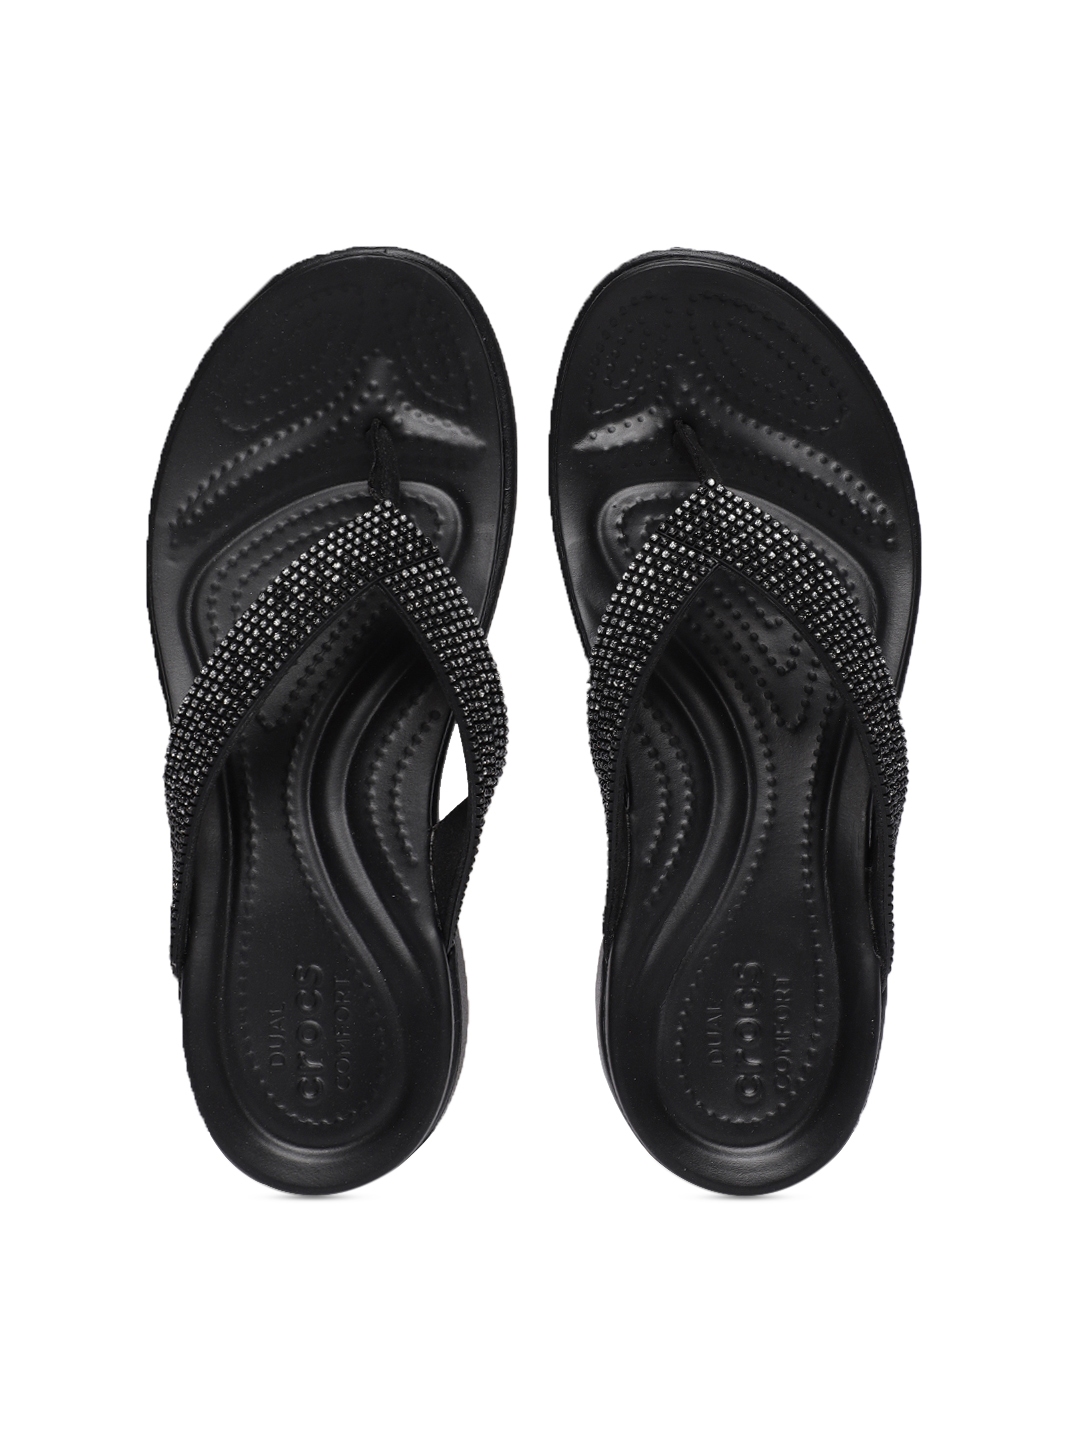 Buy Crocs Women Black Embellished Thong Flip Flops - Flip Flops for ...